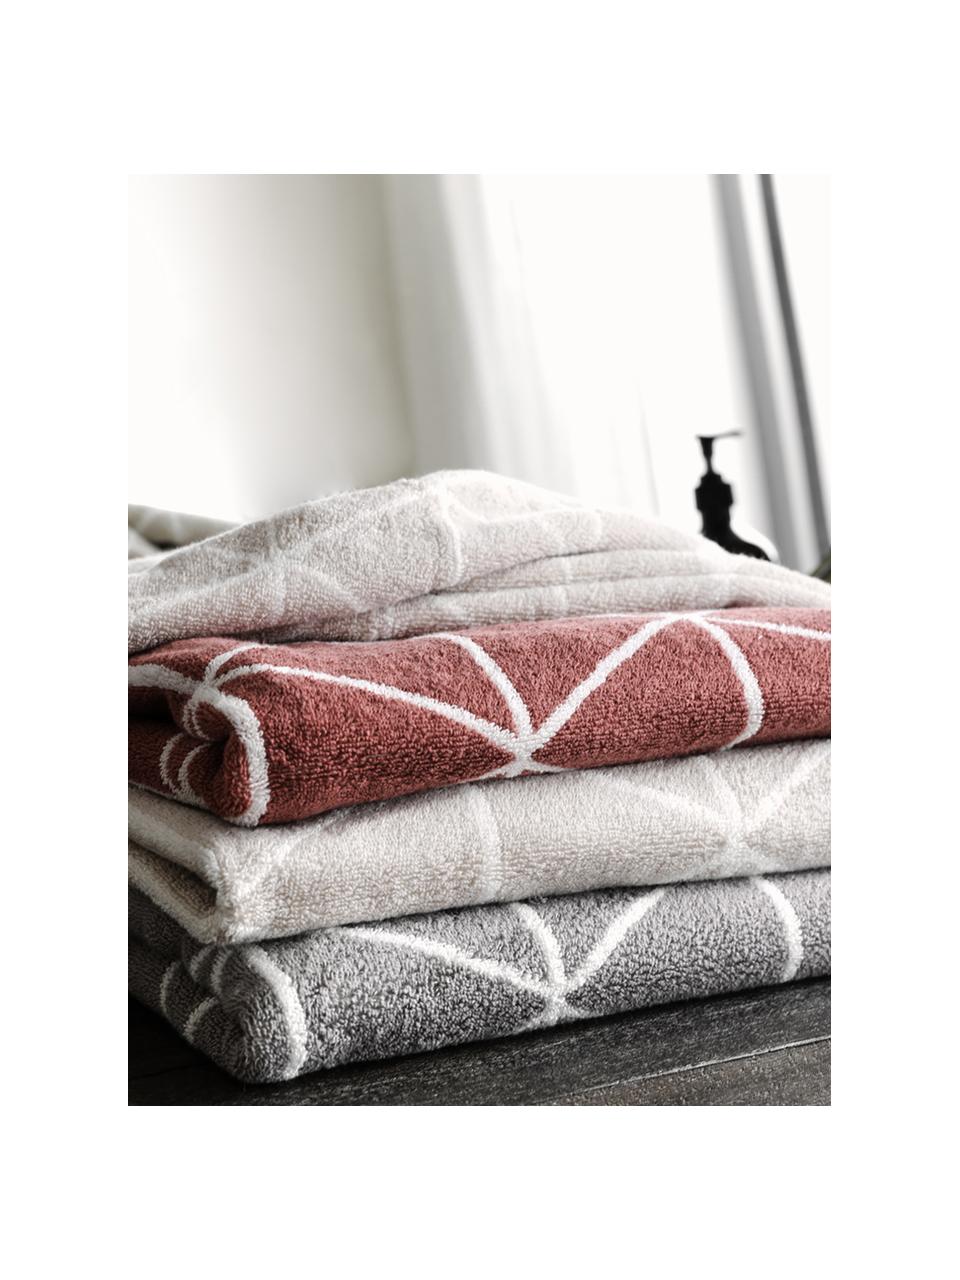 Dubbelzijdige handdoekenset Elina, 3-delig, 100% katoen, middelzware kwaliteit, 550 g/m², Terracotta, crèmewit, Set met verschillende formaten